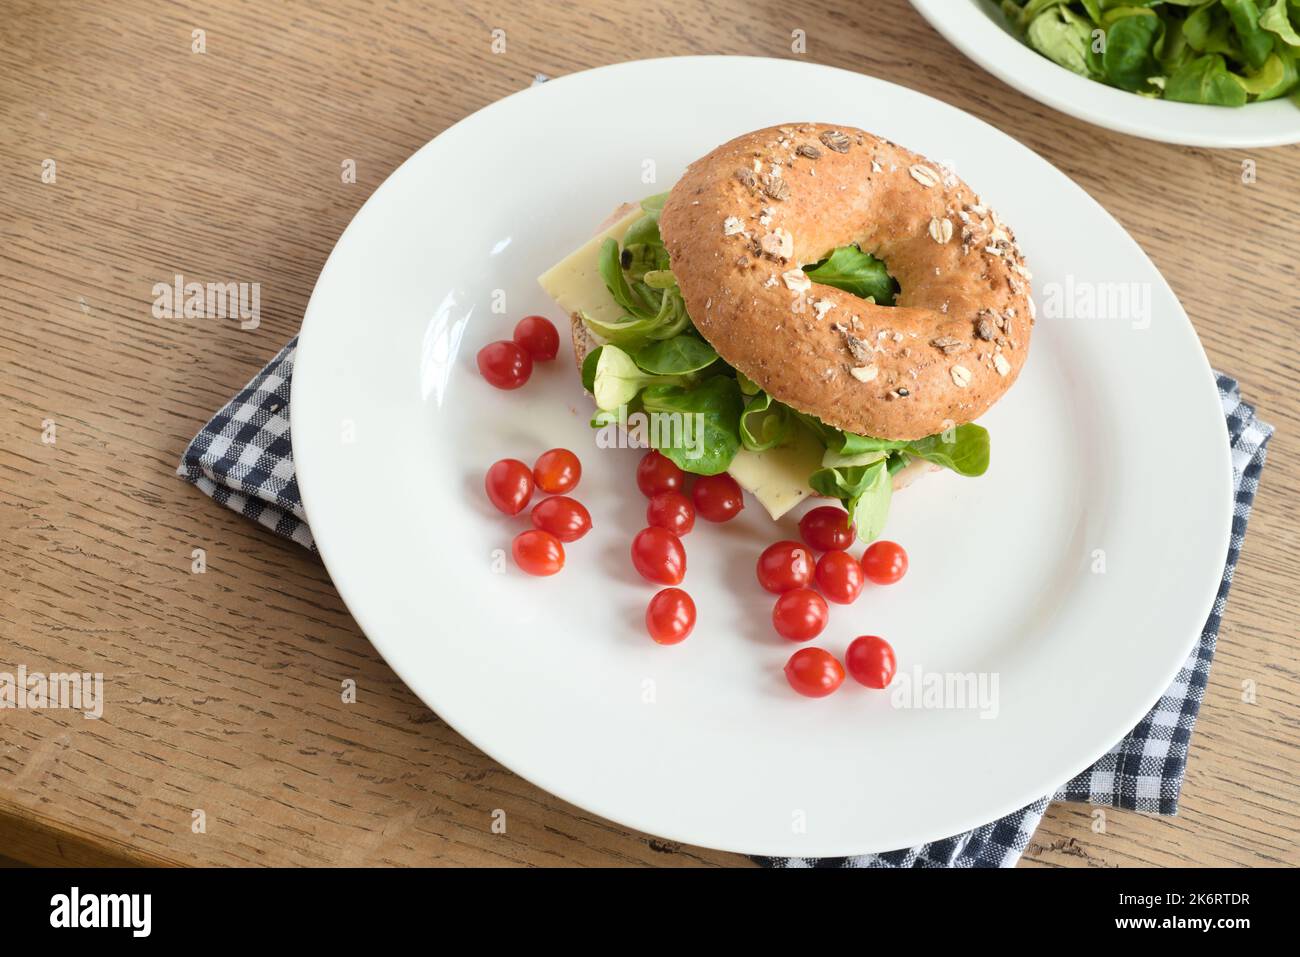 Bagel-Sandwich mit Käse, grünen Salatblättern und Kirschtomaten auf einem Teller Stockfoto